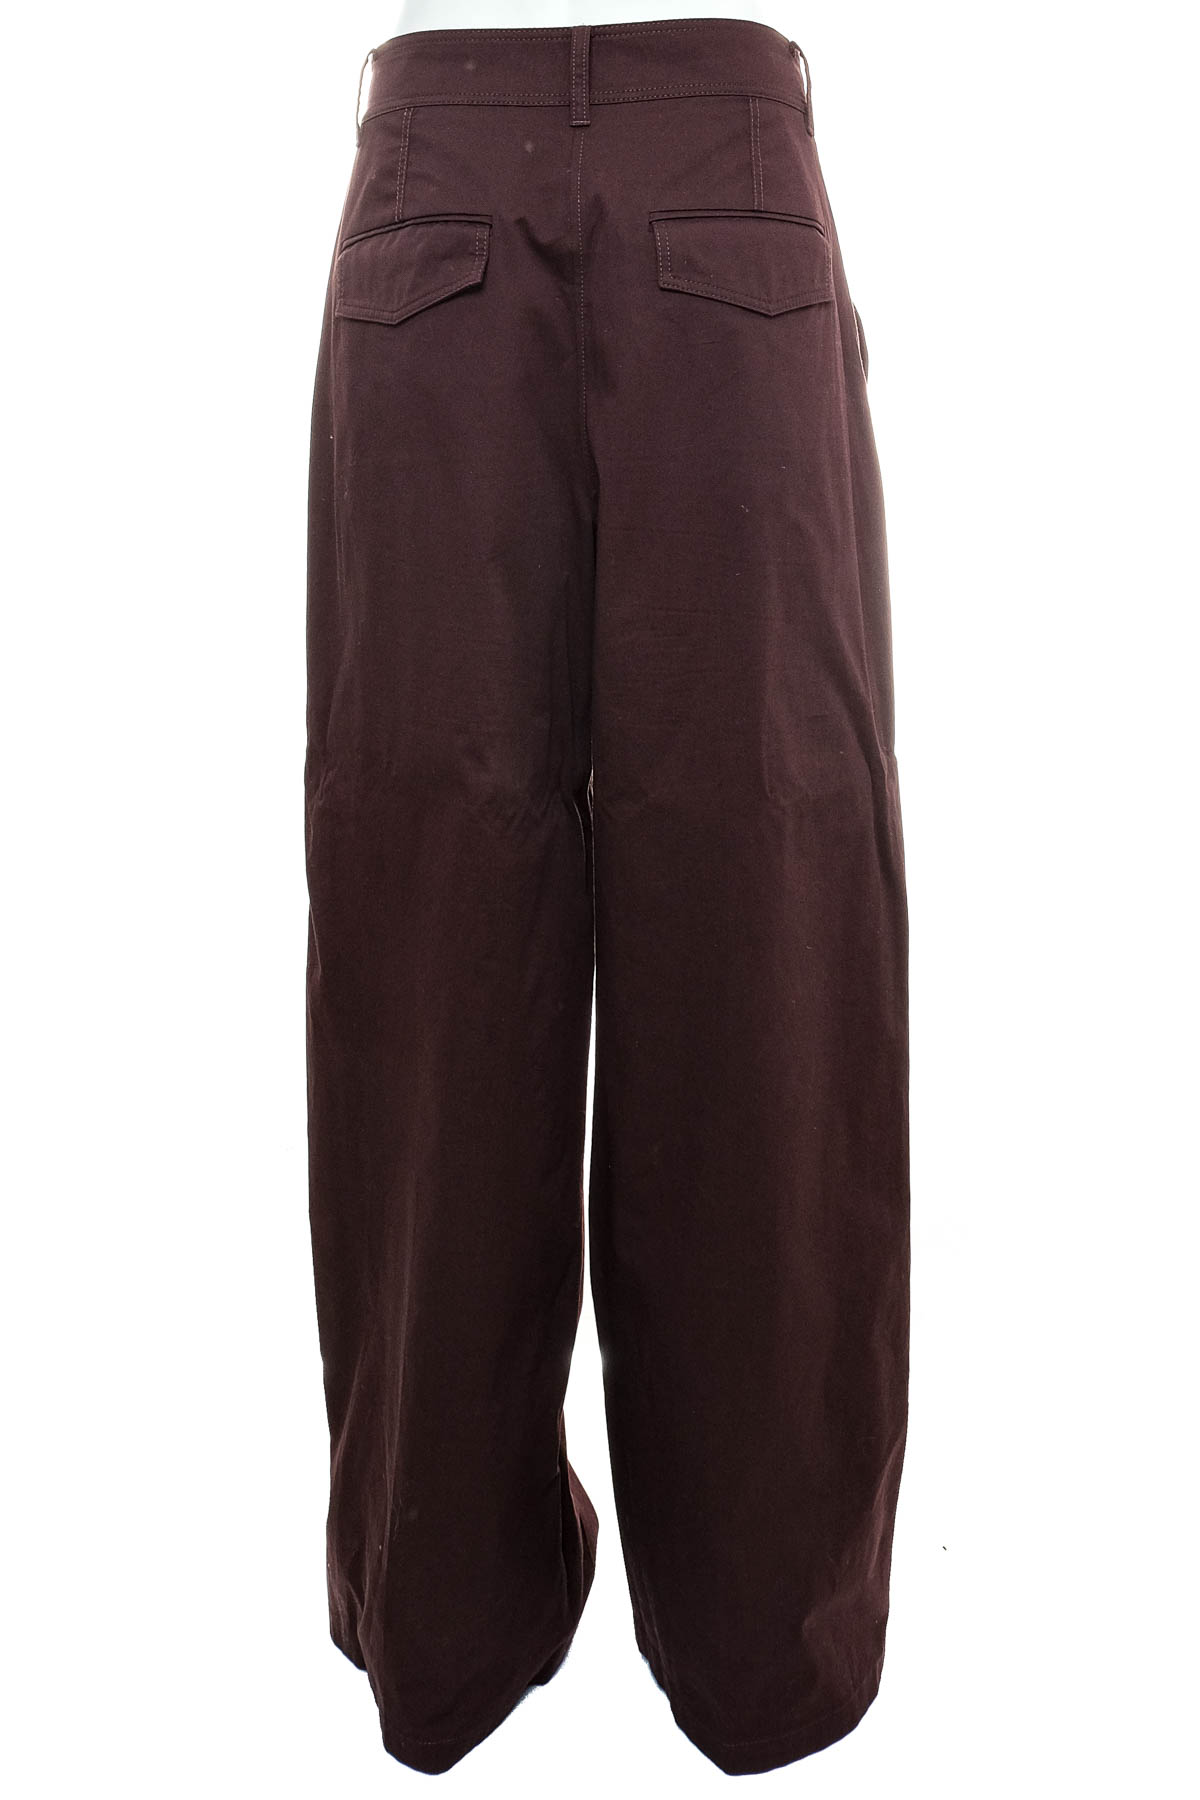 Pantaloni de damă - COS - 1